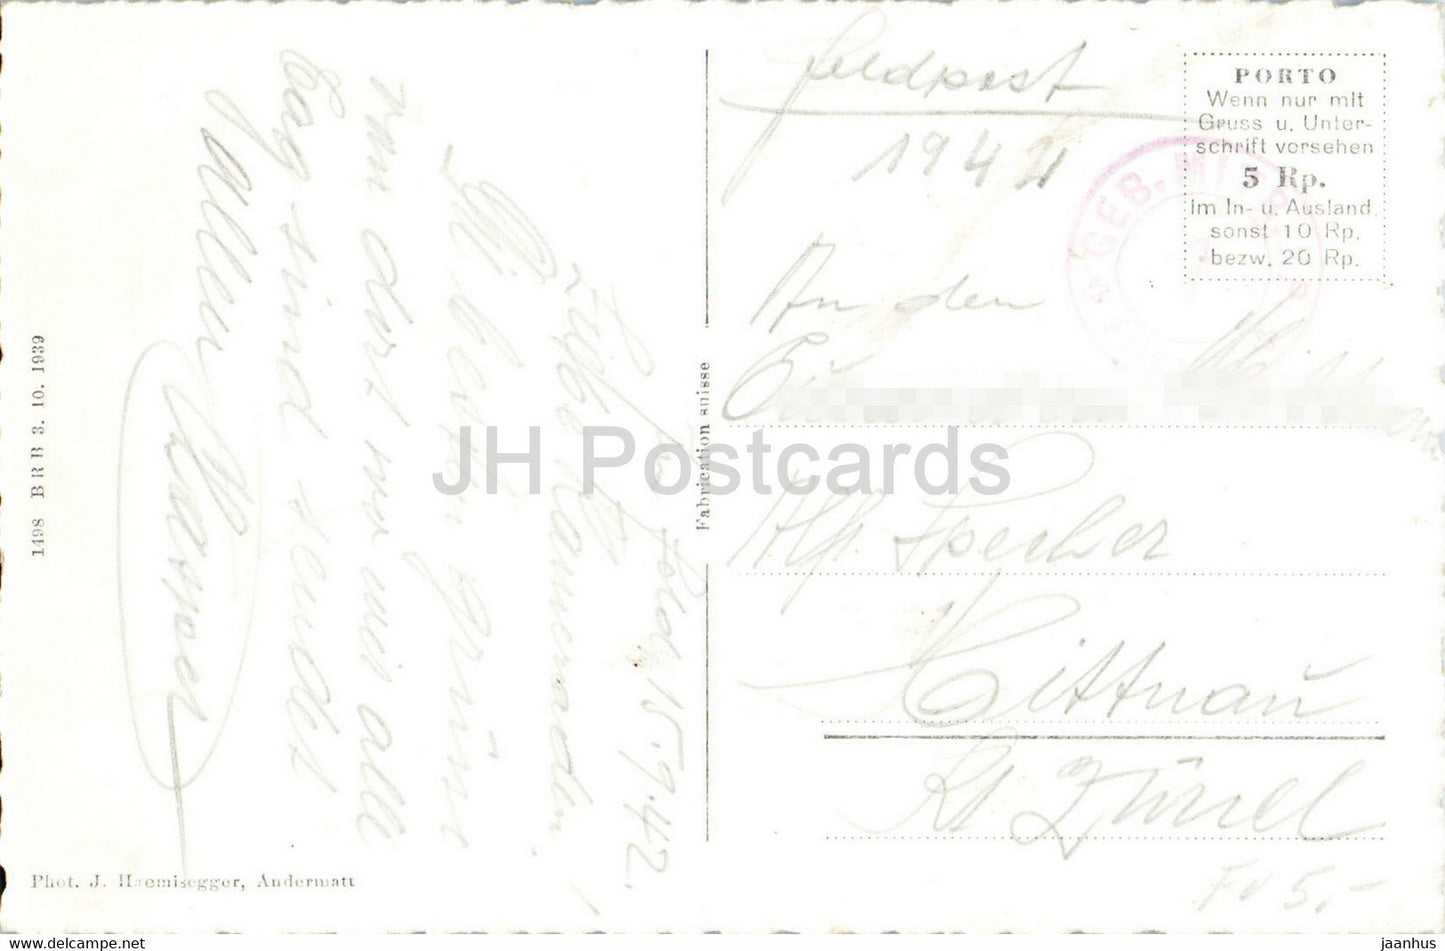 Andermatt - Piz Lucendro - 7206 - Feldpost - courrier militaire - carte postale ancienne - 1944 - Suisse - utilisé